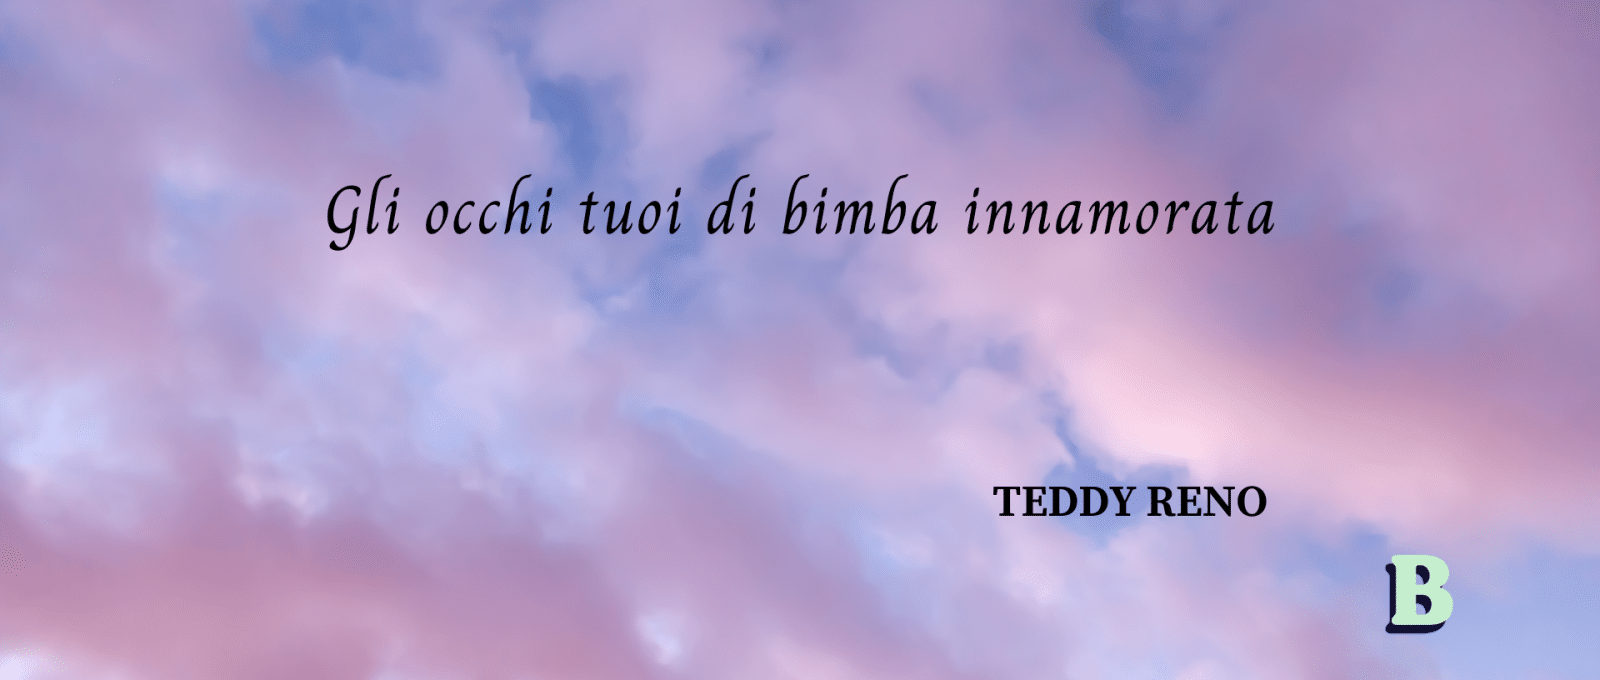 frasi Teddy Reno